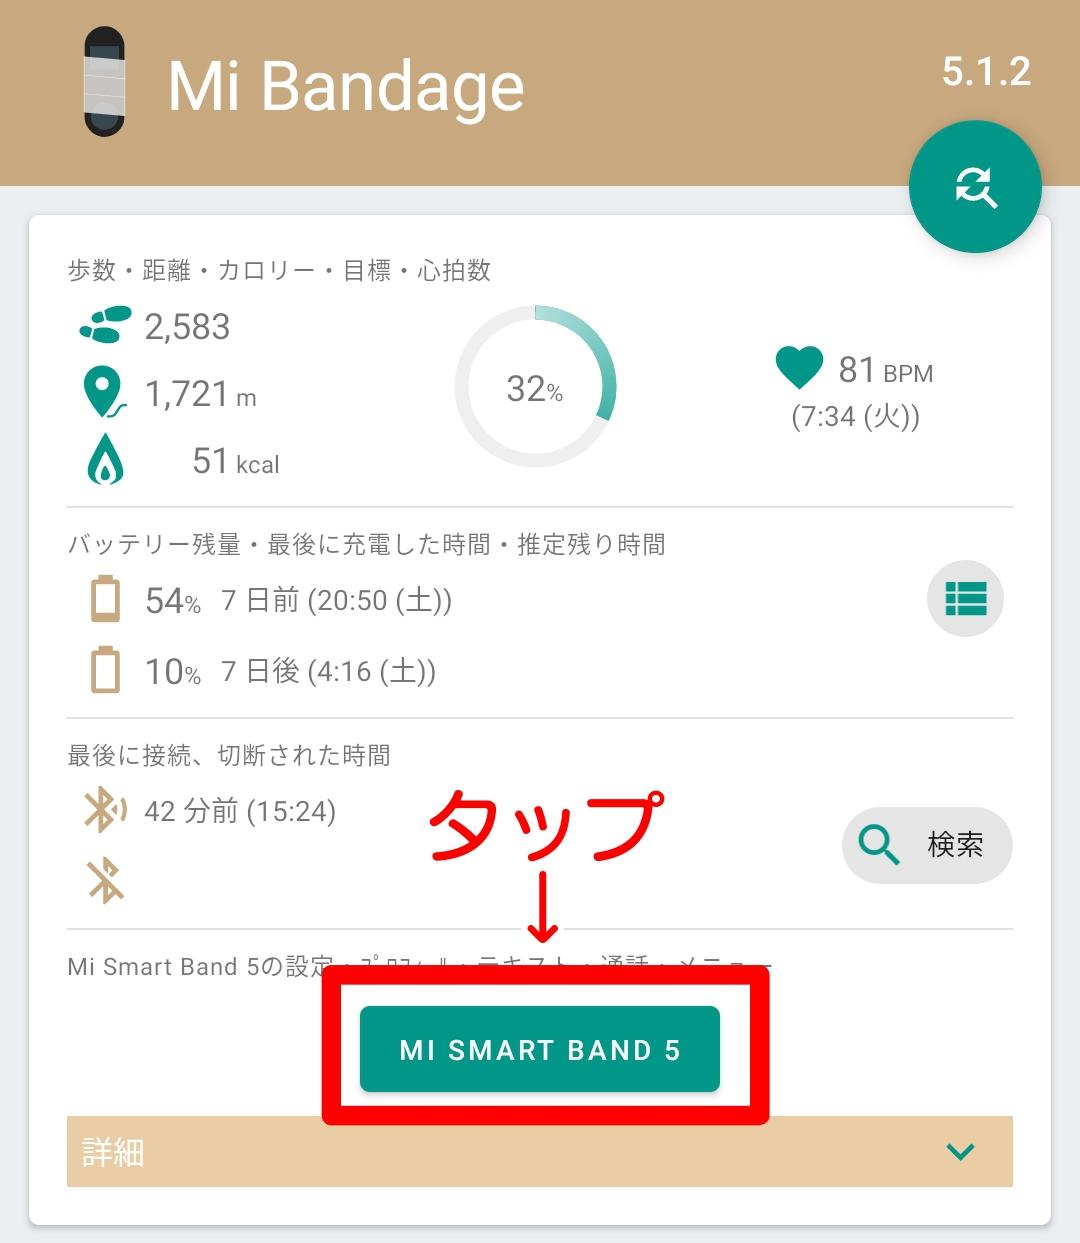 Mi Bandageのホーム画面から設定画面に移動する場合には「MI SMART BAND 5」をタップします